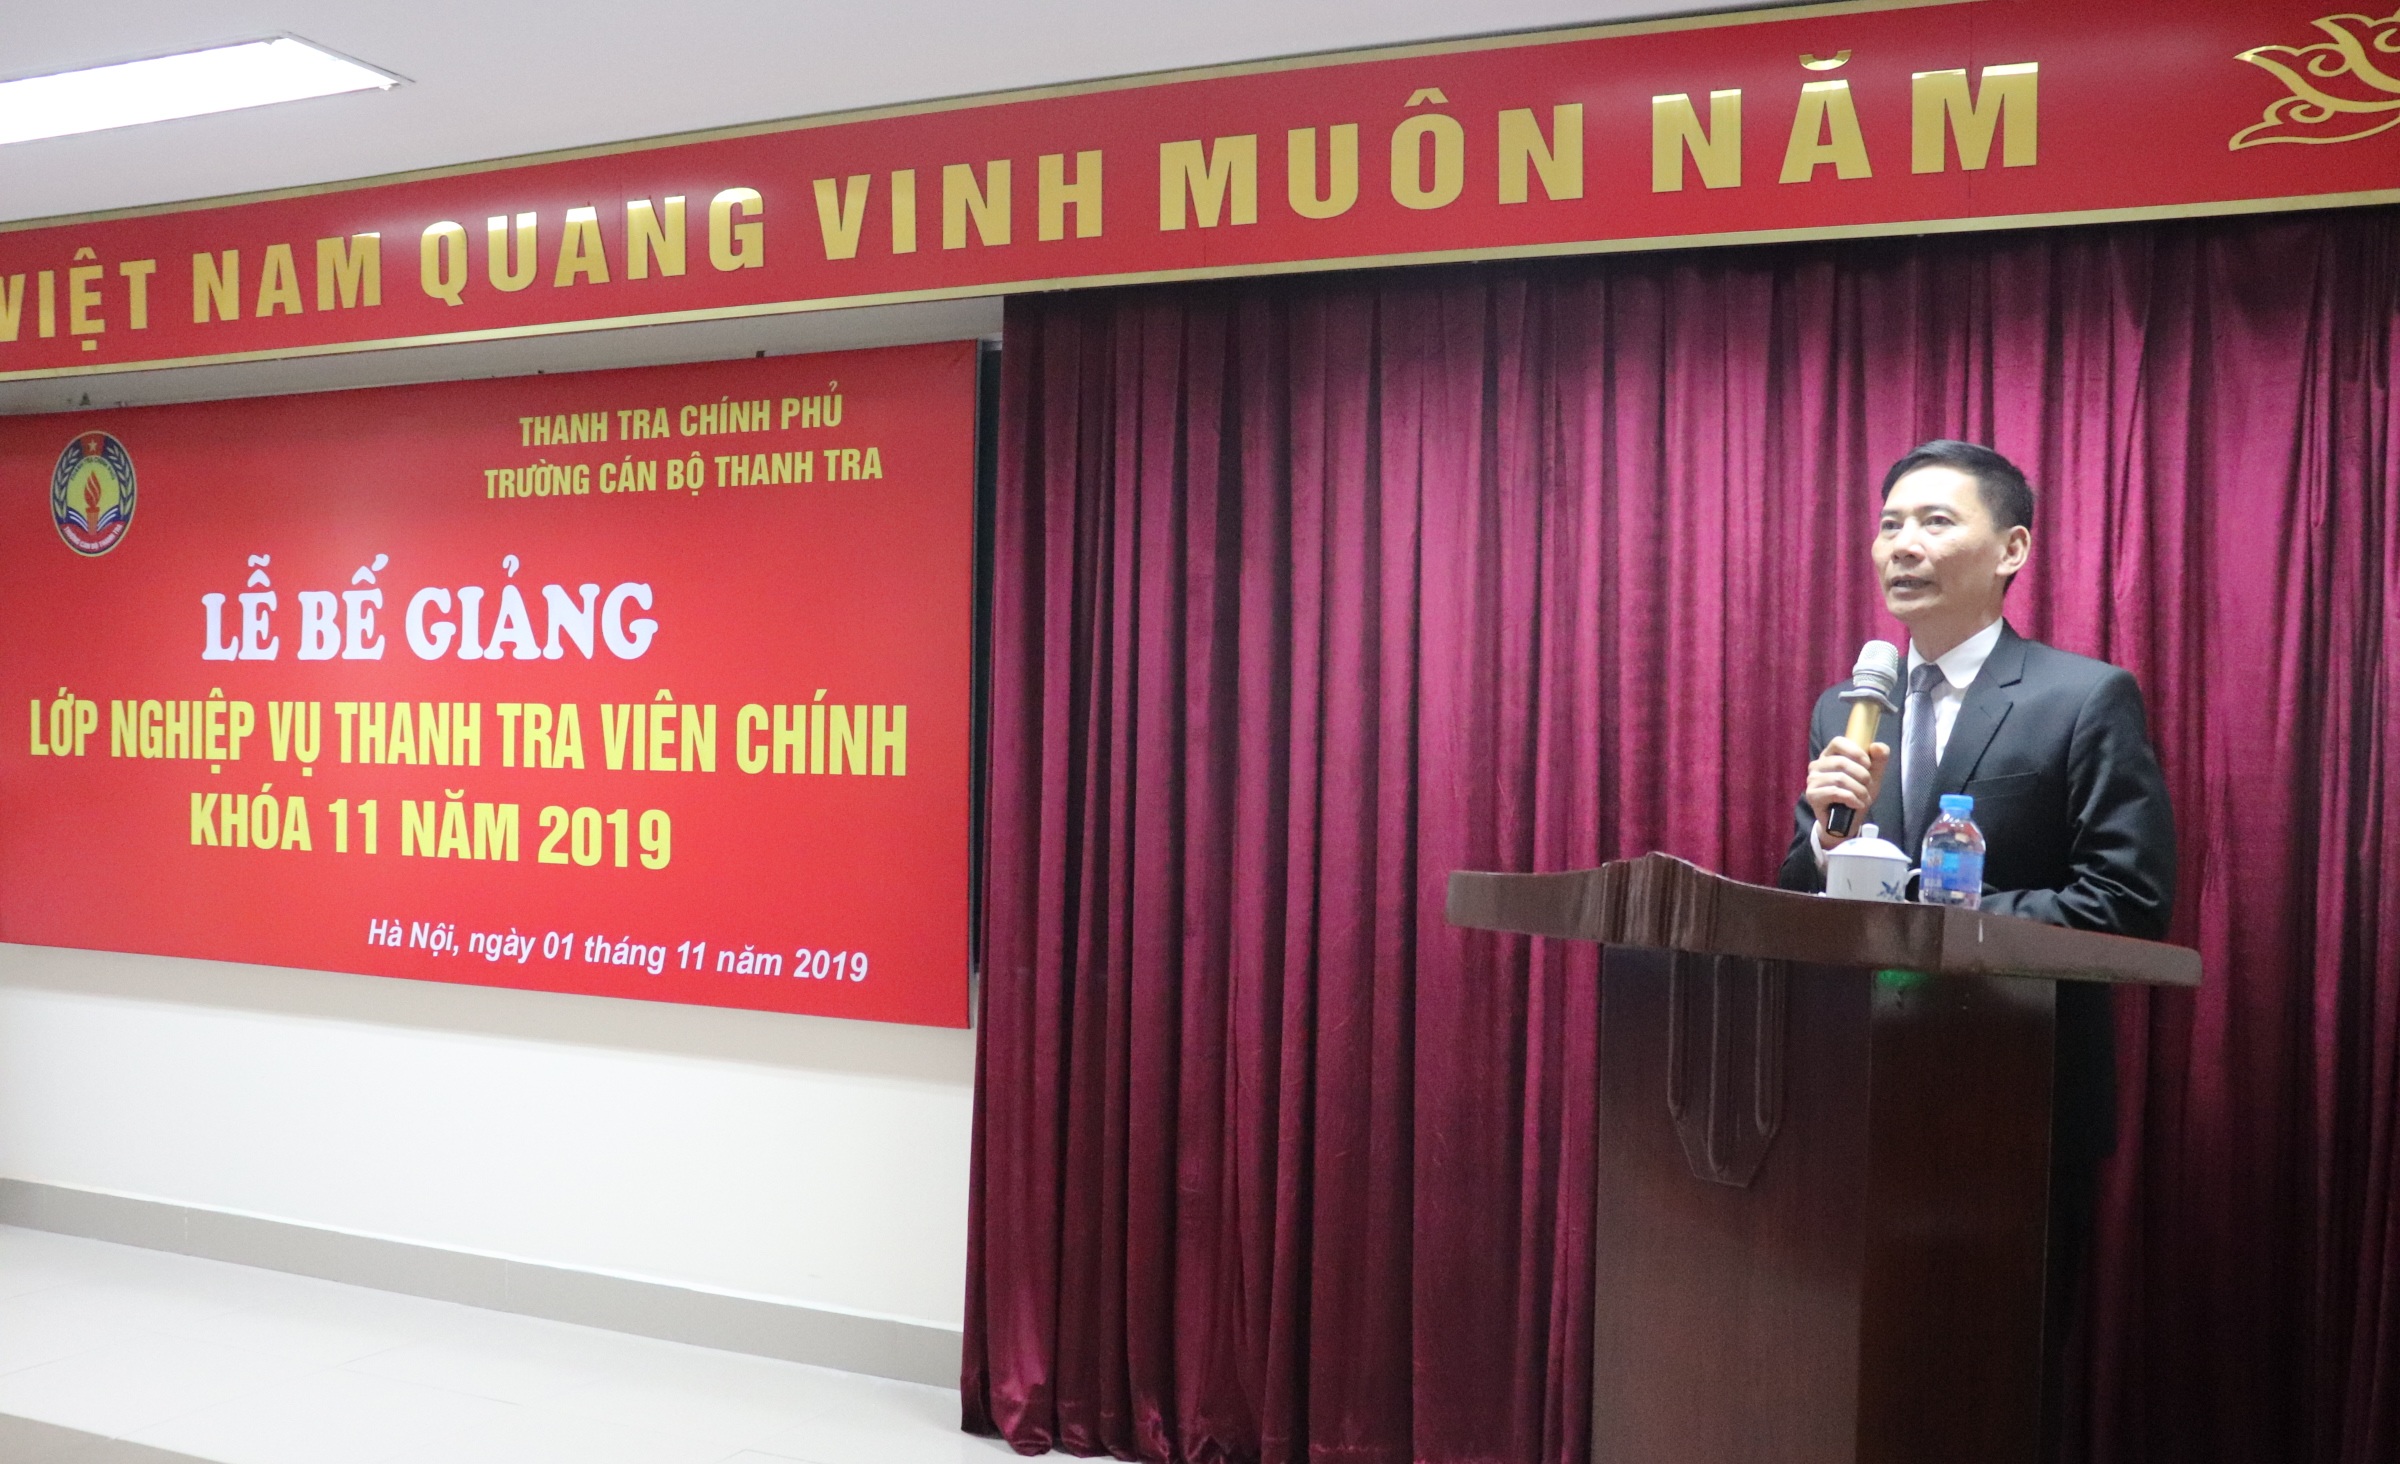 Ông Vũ Văn Chiến TTVCC Hiệu trưởng trg CBTT phát biểu bế giảng khóa học